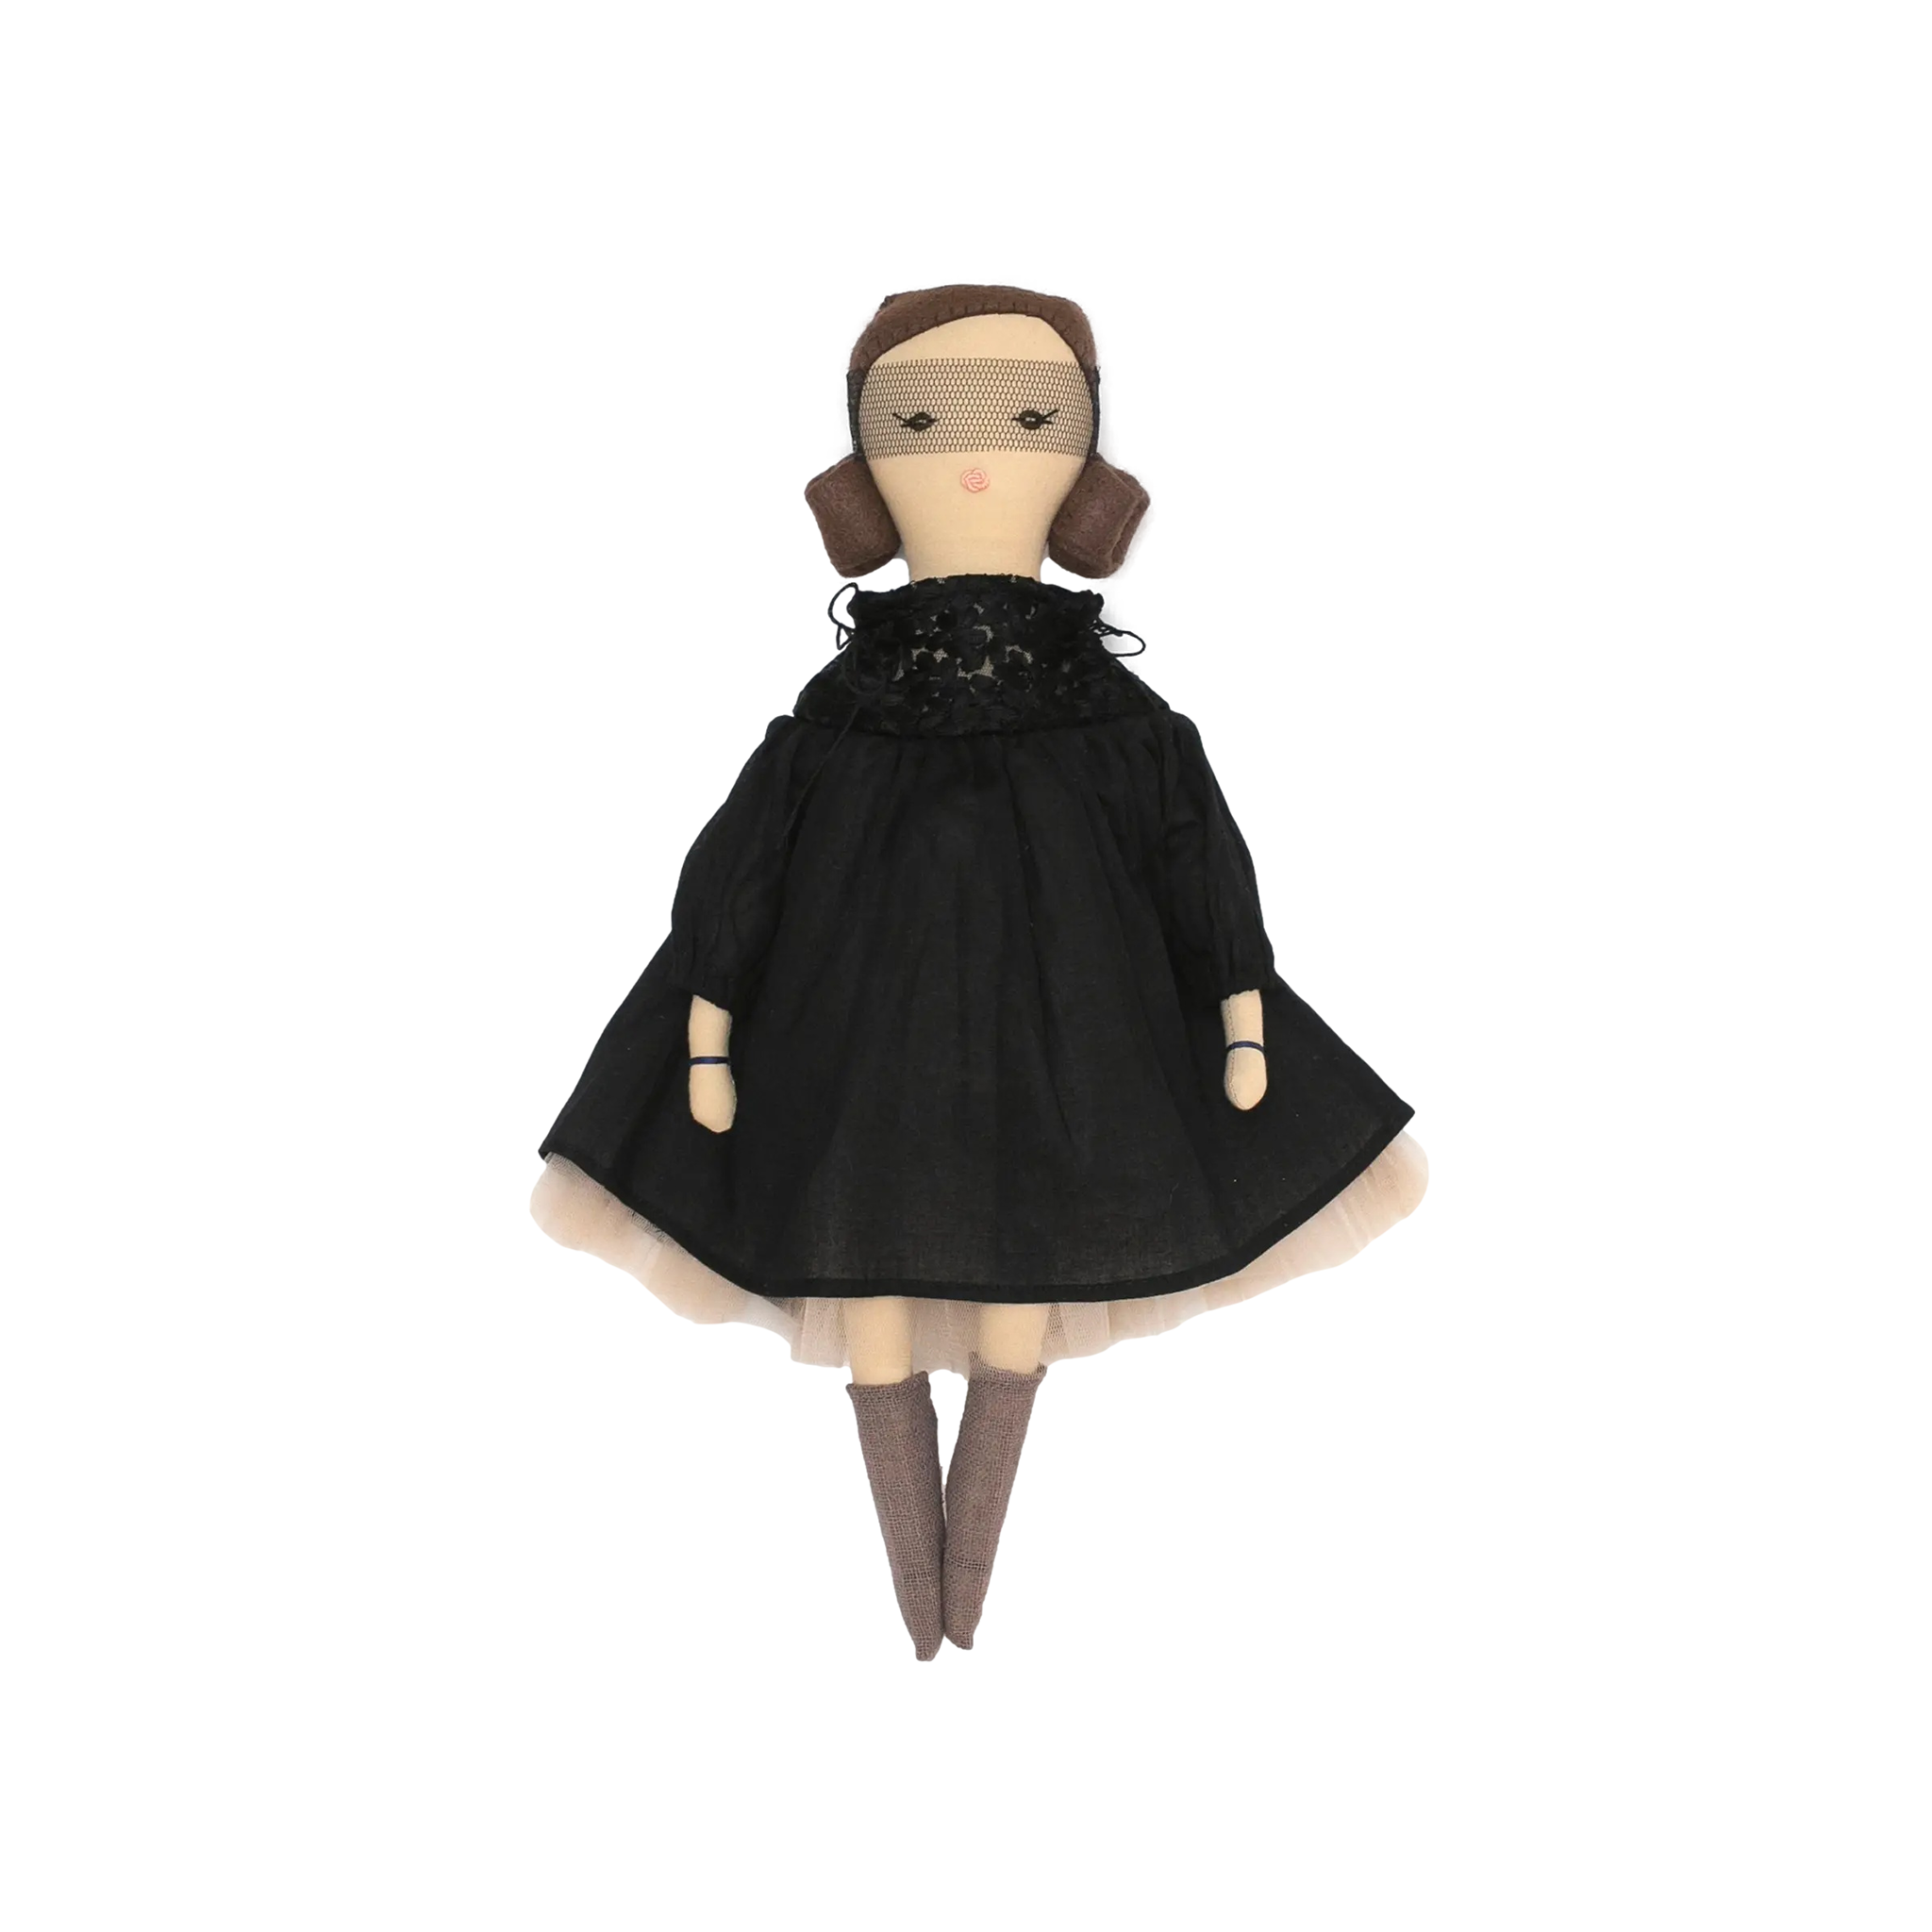 Handmade Designer Doll: Tea Party Princess